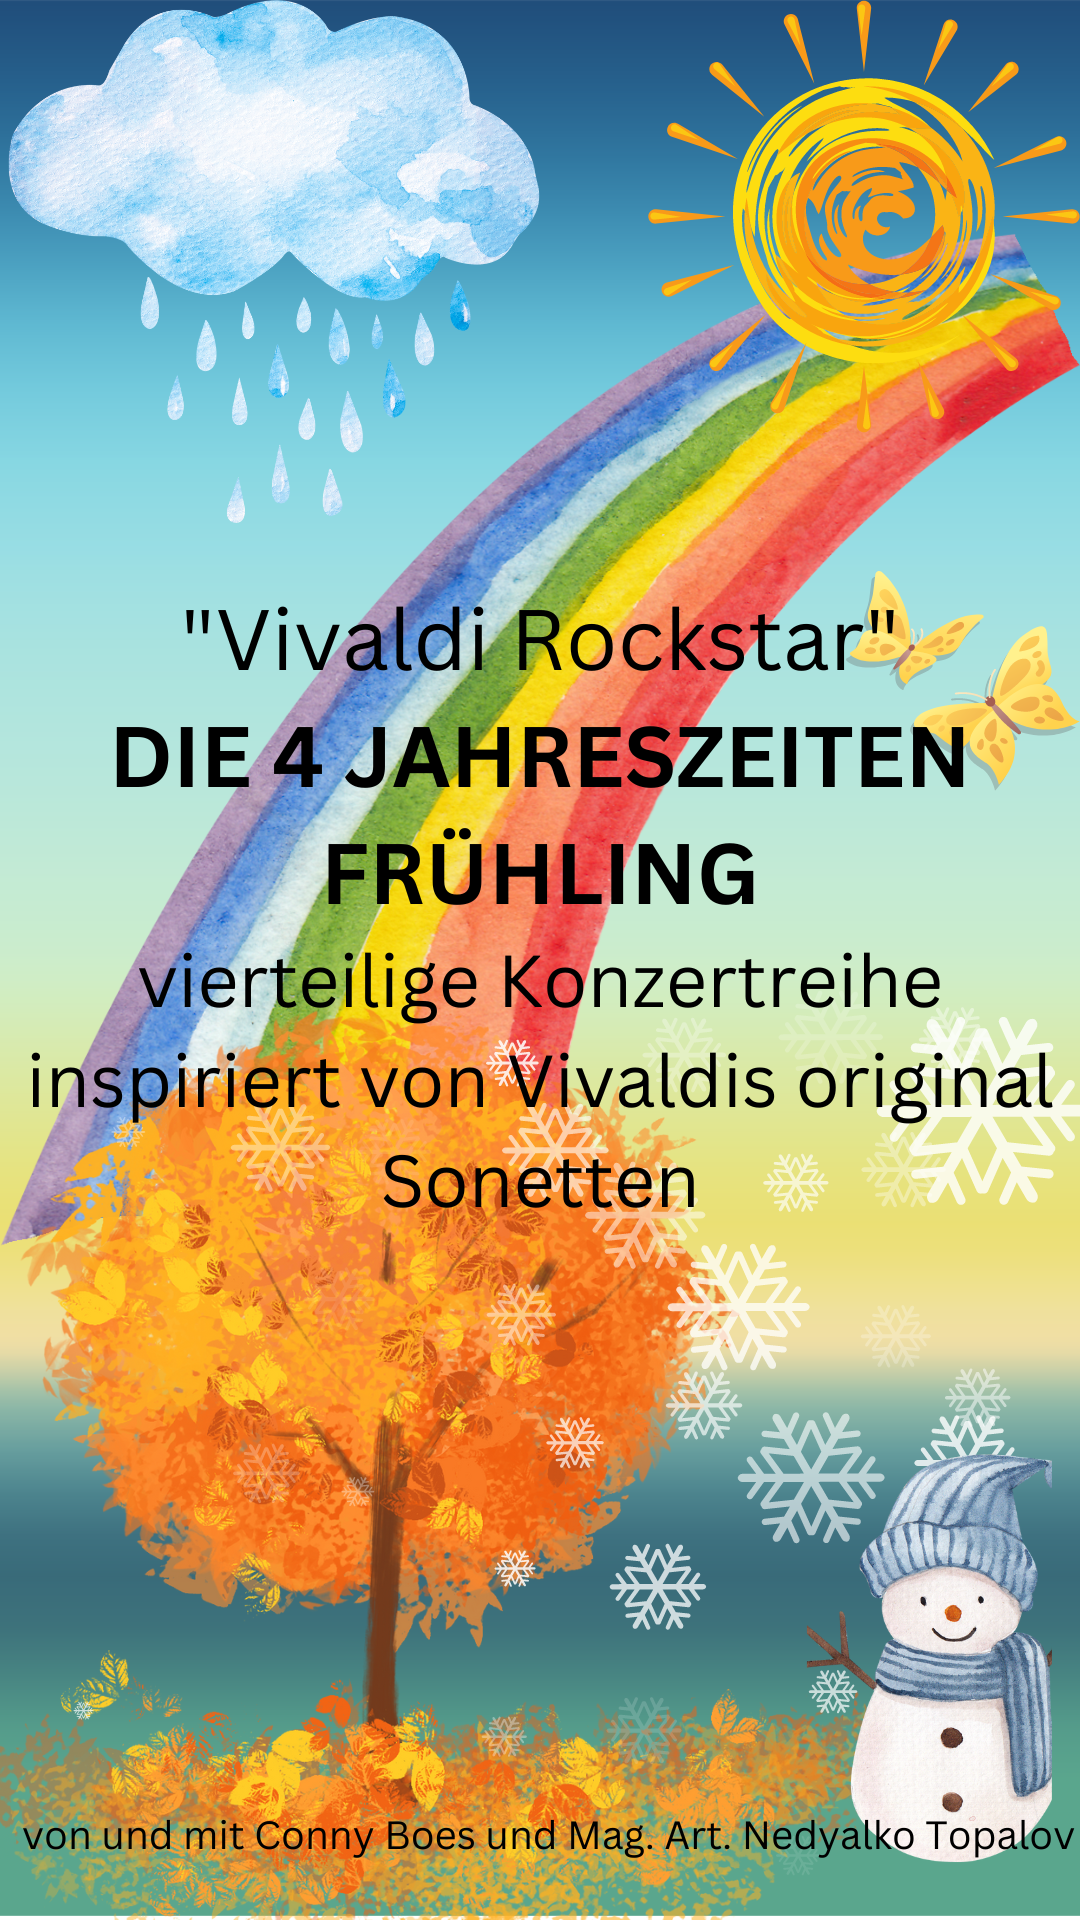 Vivaldi Rockstar "Die vier Jahreszeiten" - Frühling